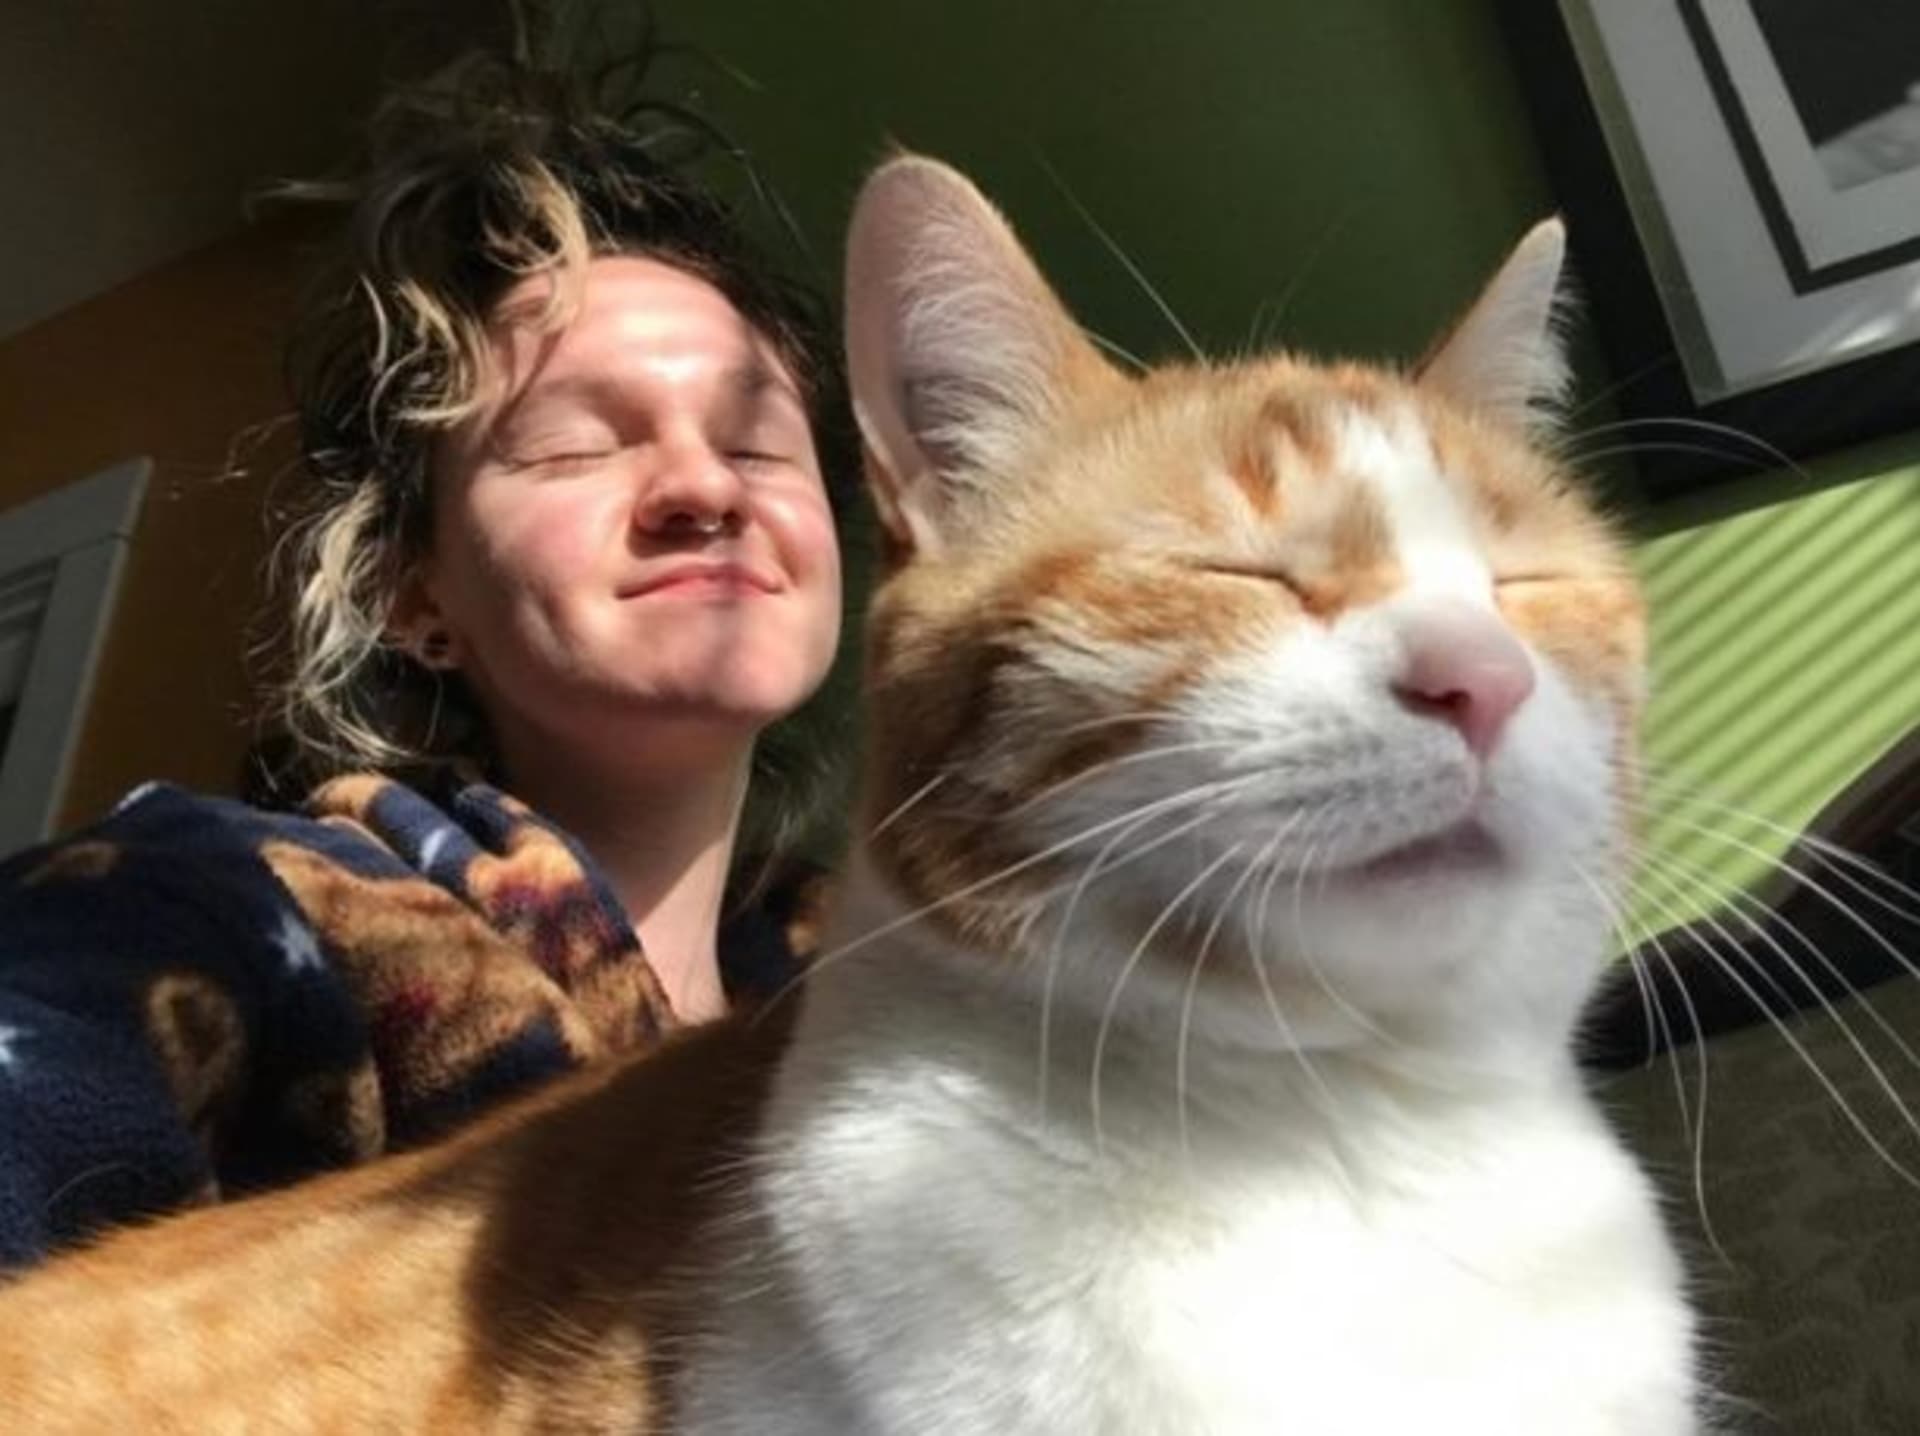 Nikdy neztrácejte naději, vzkázala Hobbinsová lidem poté, co se její kočka vrátila po kremaci domů. (Autor: Desiree Hobbins)